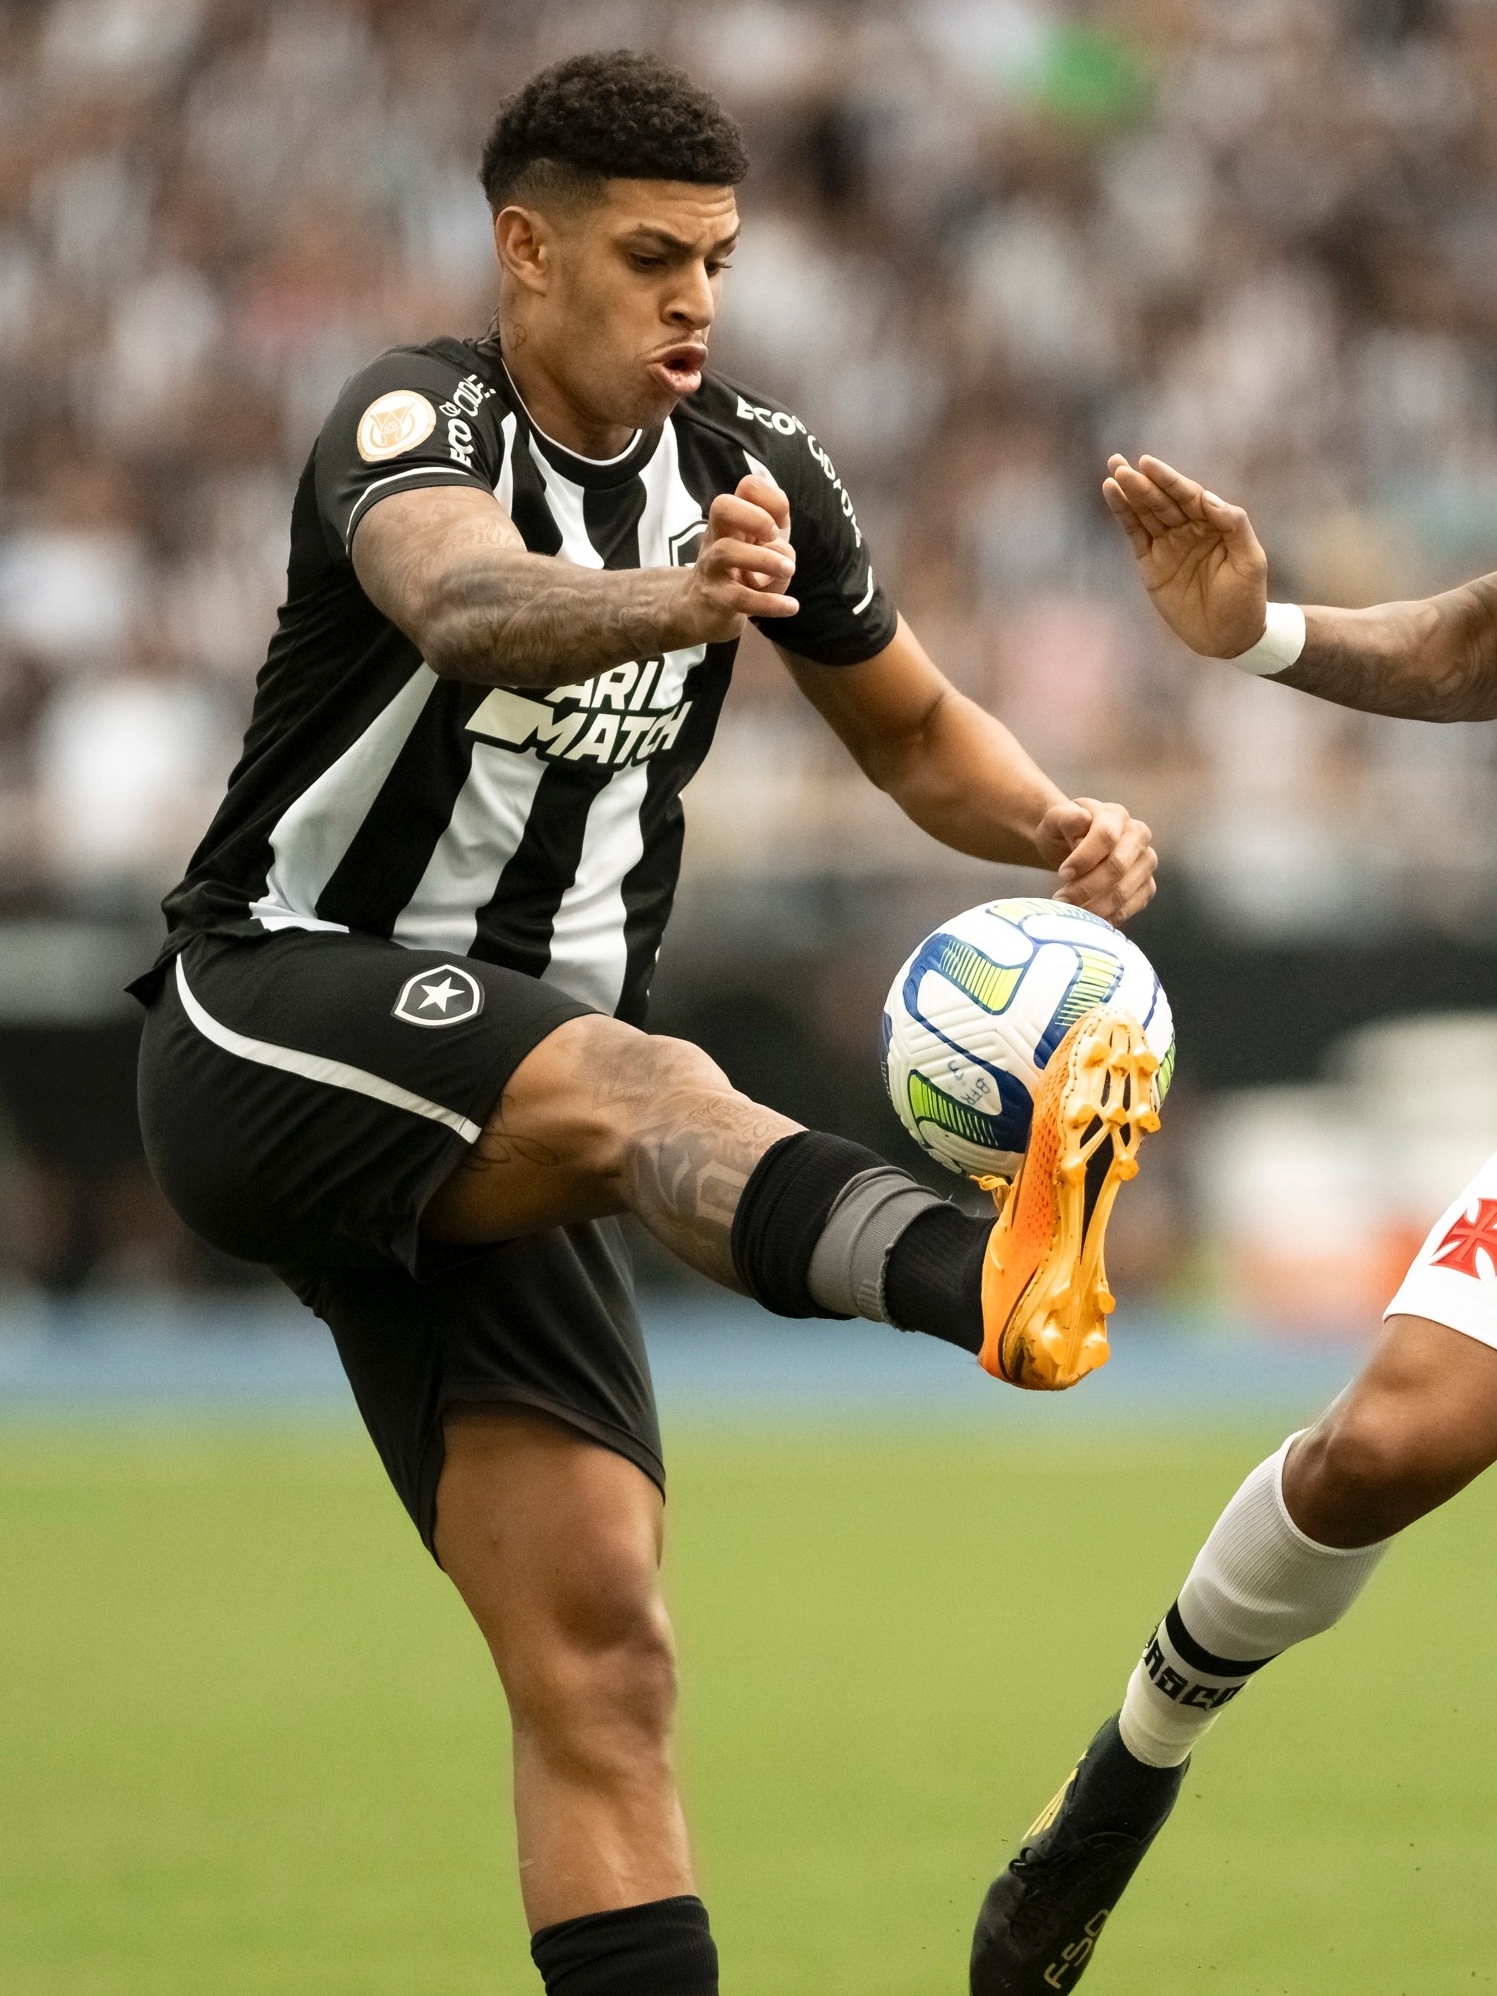 CBF desmembra a tabela de mais dois jogos do Botafogo na Série B - Botafogo  Futebol SA